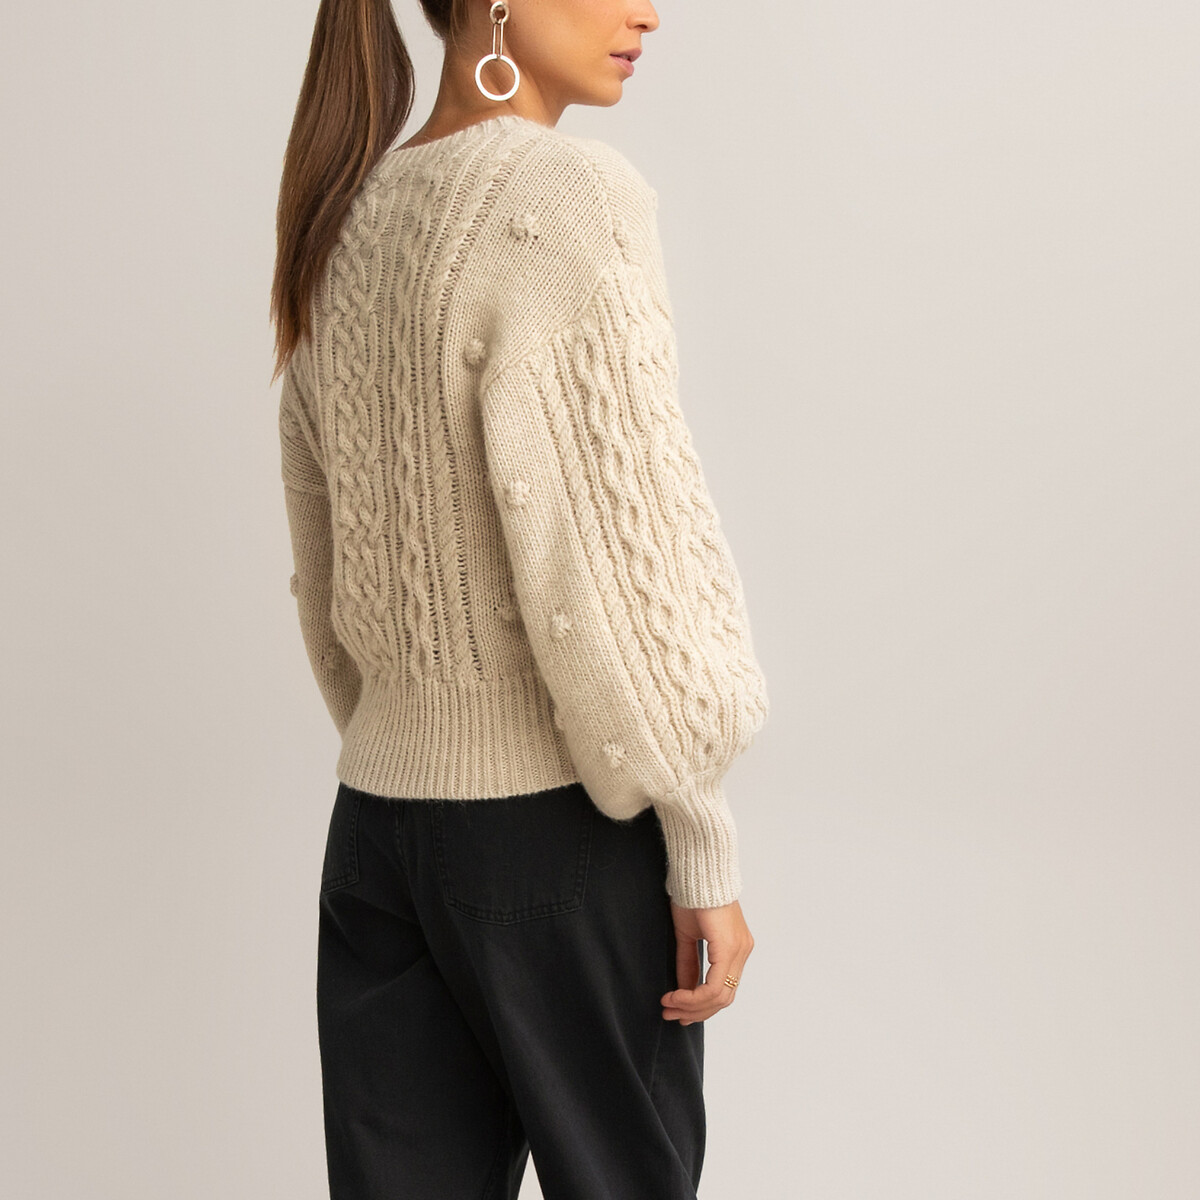 Пуловер La Redoute С круглым вырезом из плотного трикотажа S бежевый, размер S - фото 4